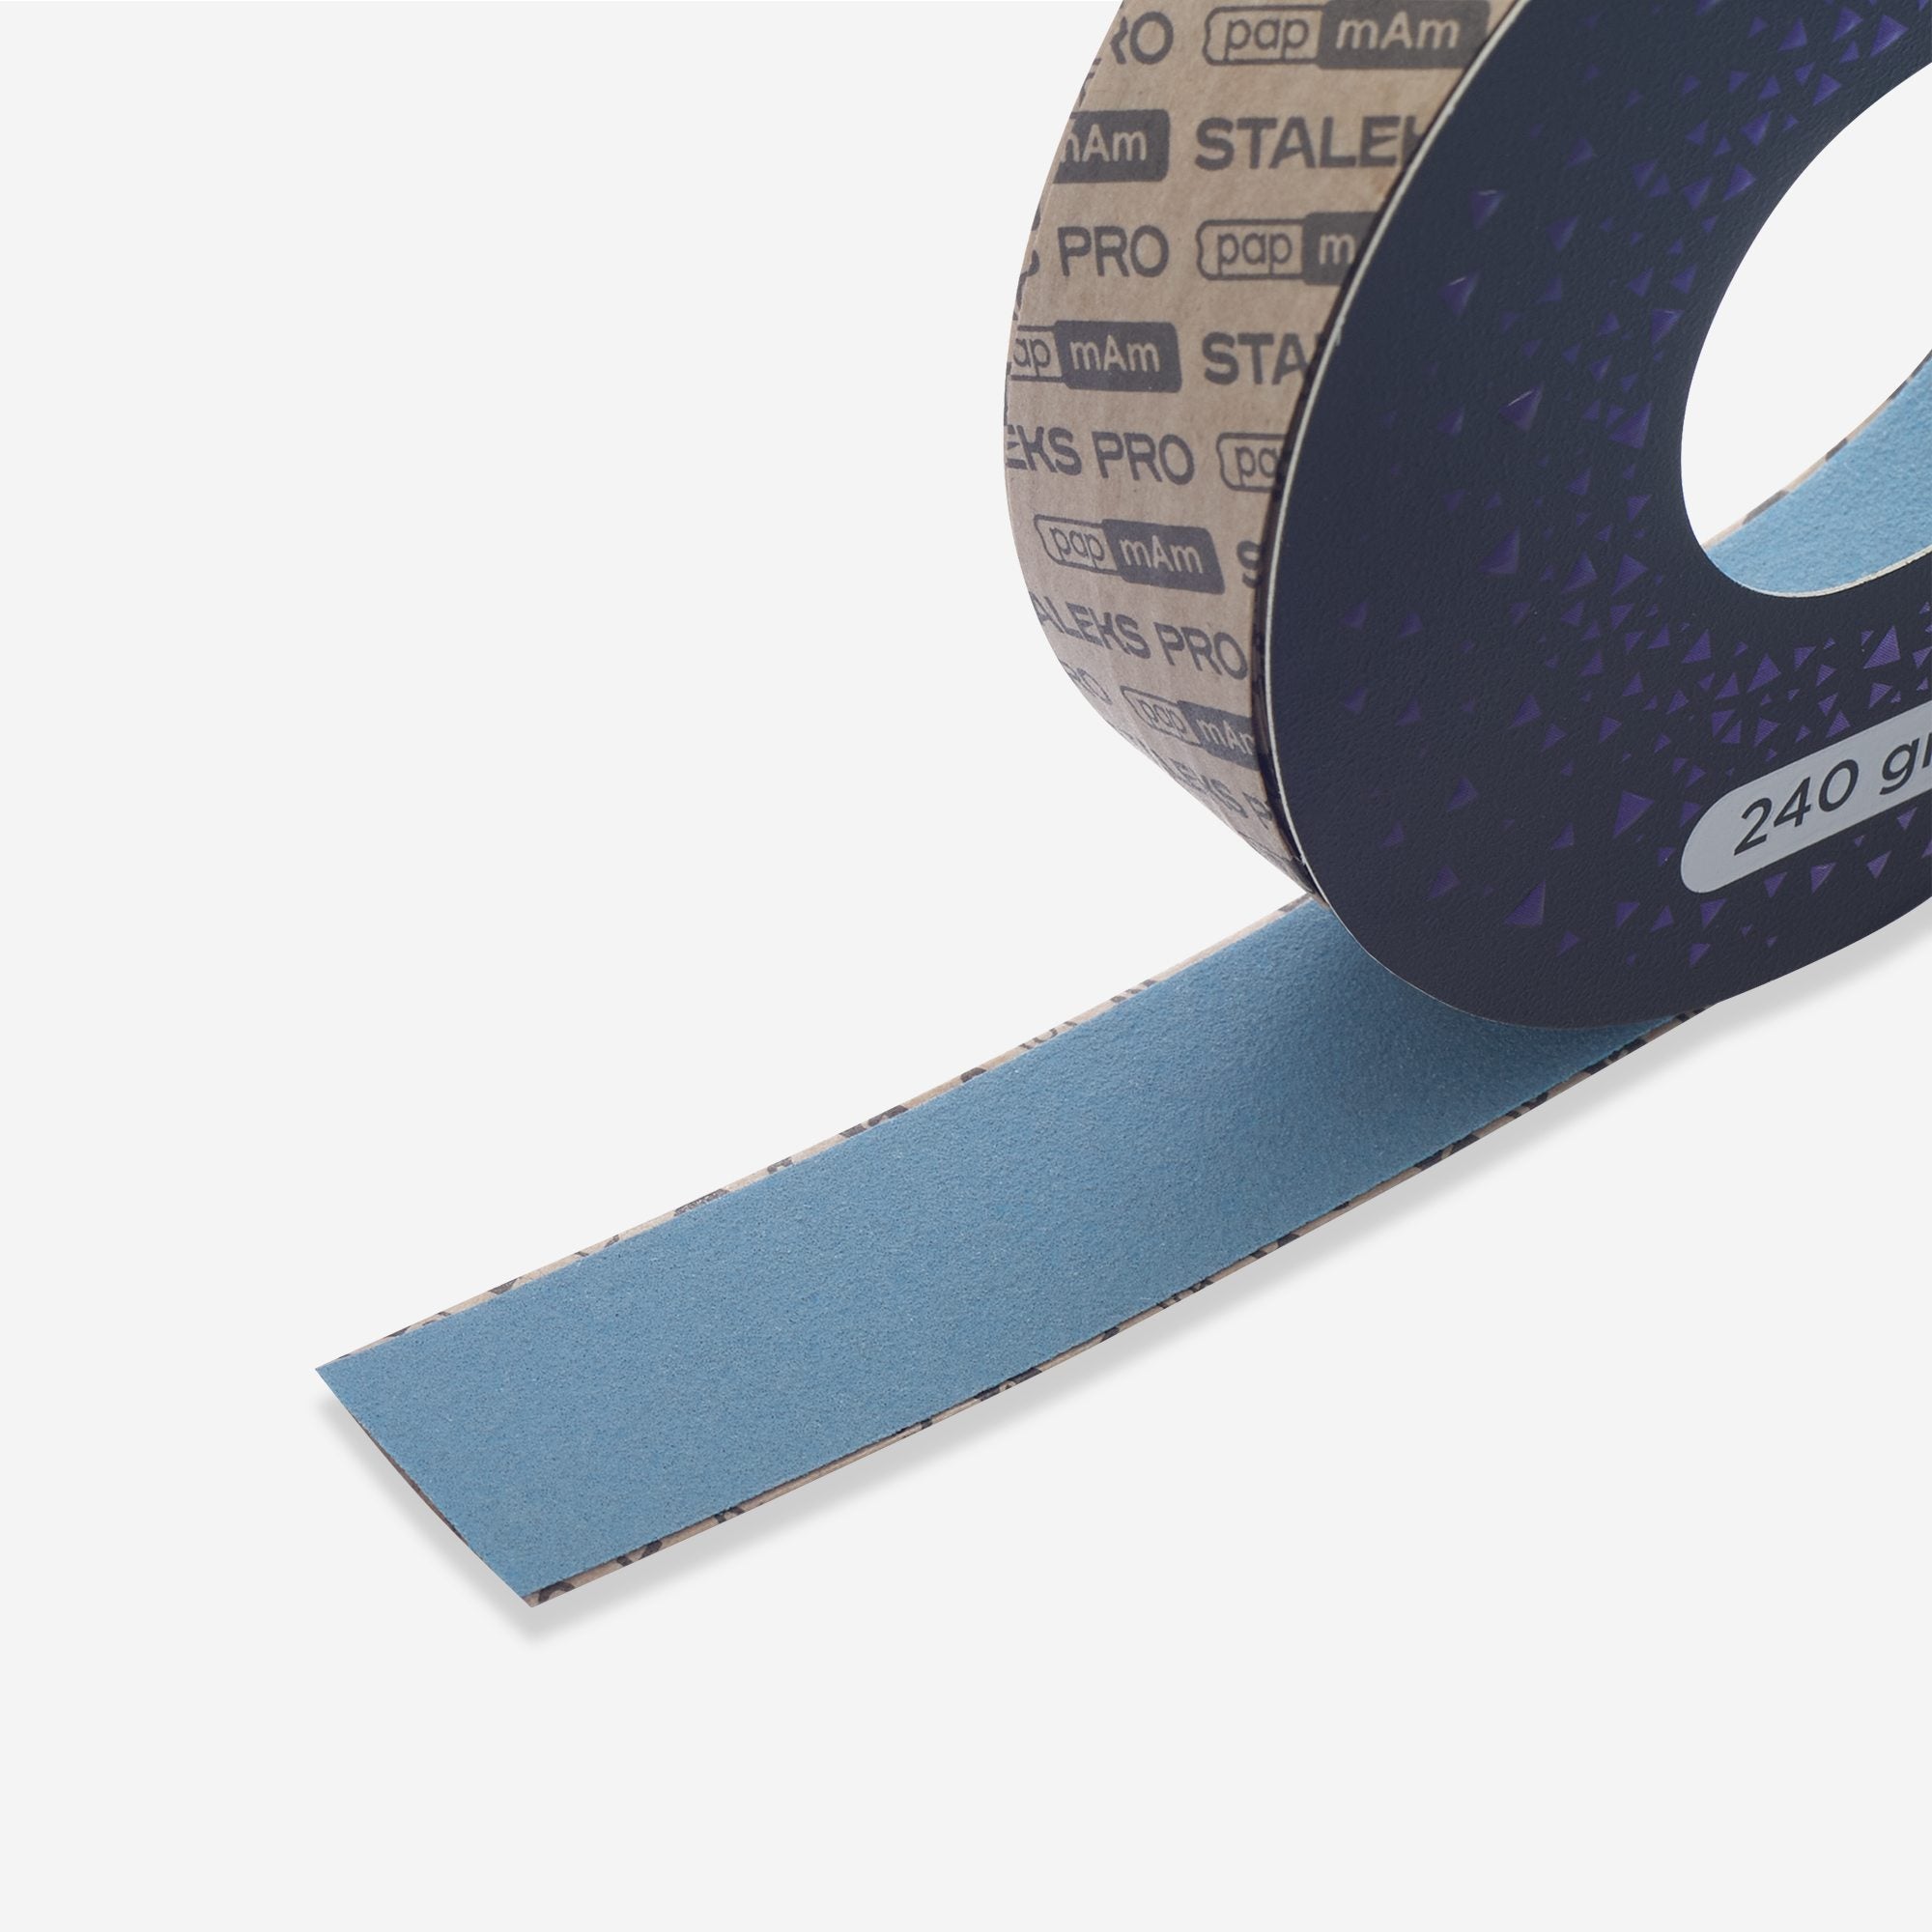 Jednorázová abrazivní páska papmAm EXCLUSIVE (bez plastového pouzdra) STALEKS PRO